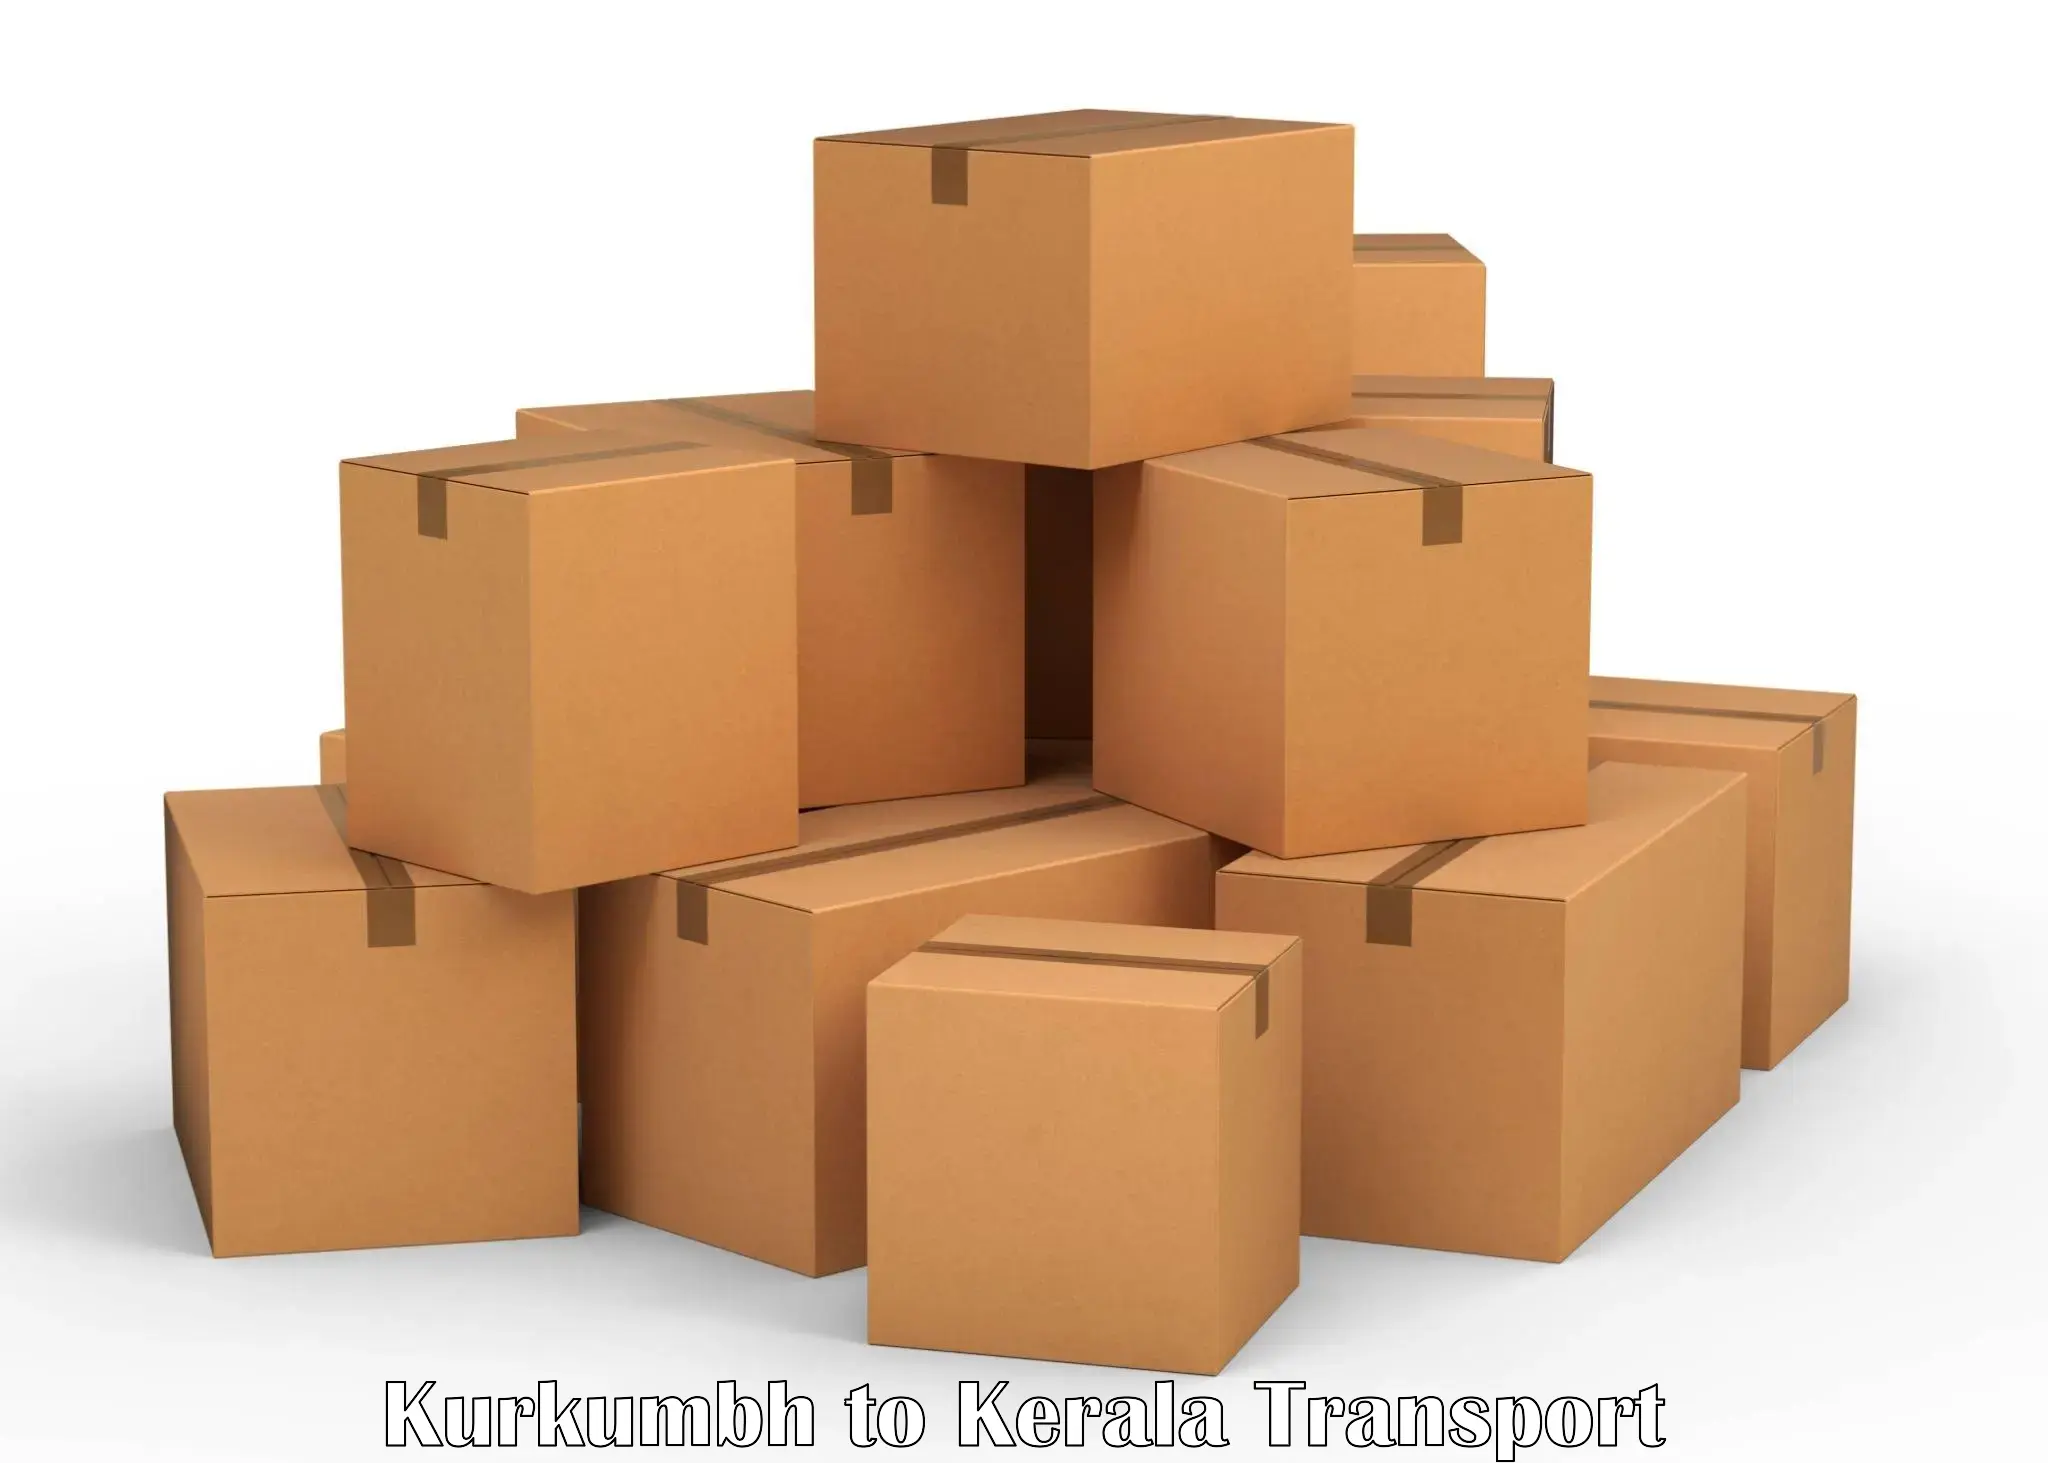 Daily parcel service transport in Kurkumbh to Cherpulassery